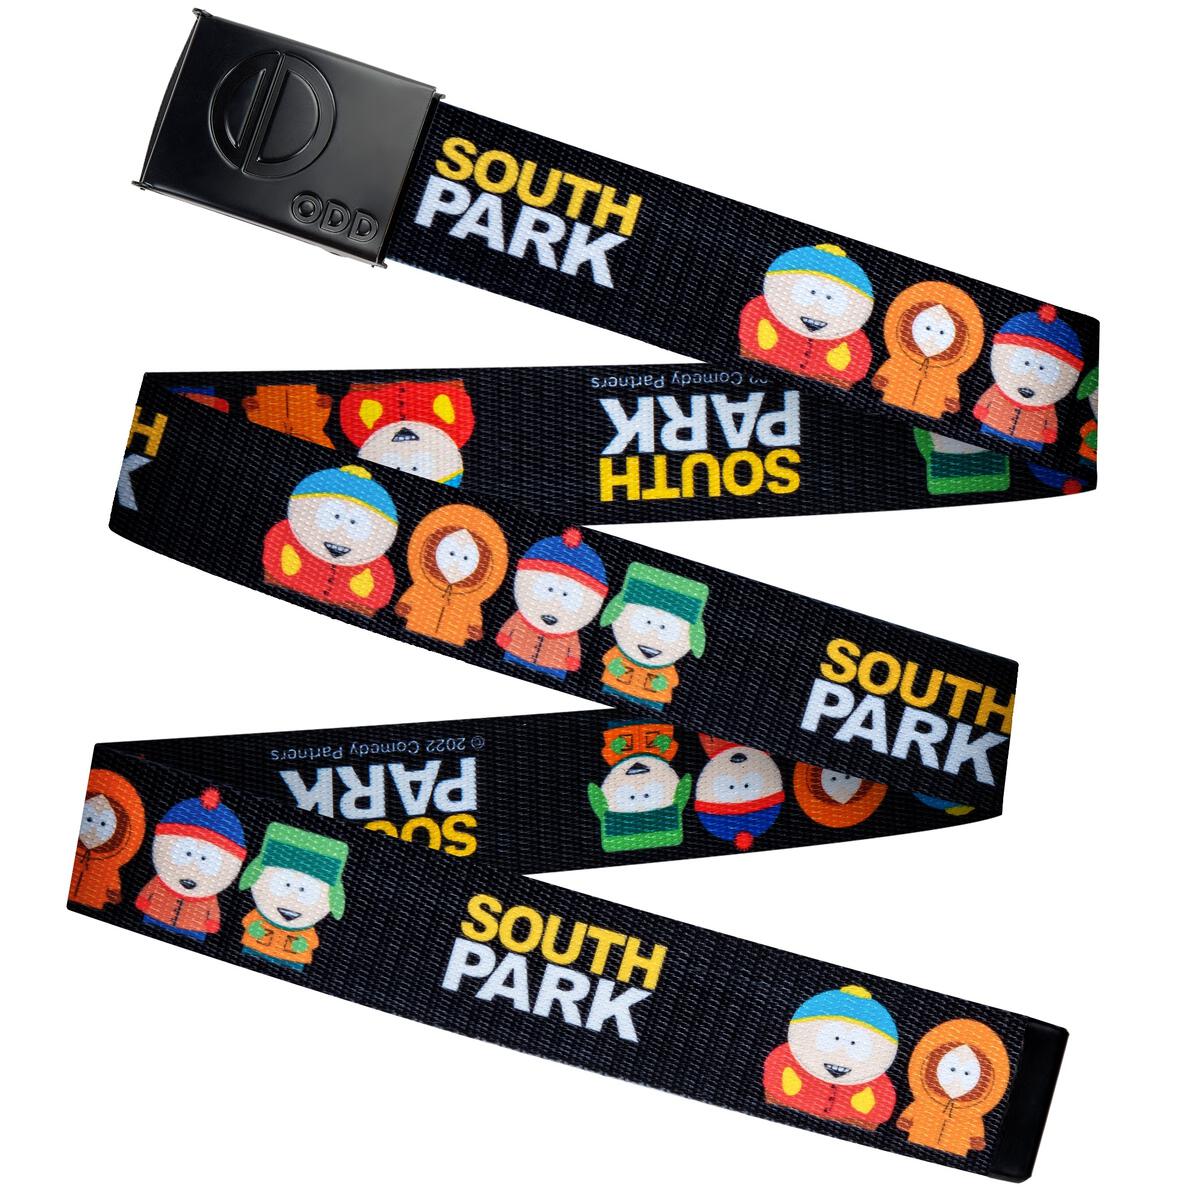 South Park - Unisex One Size Belts